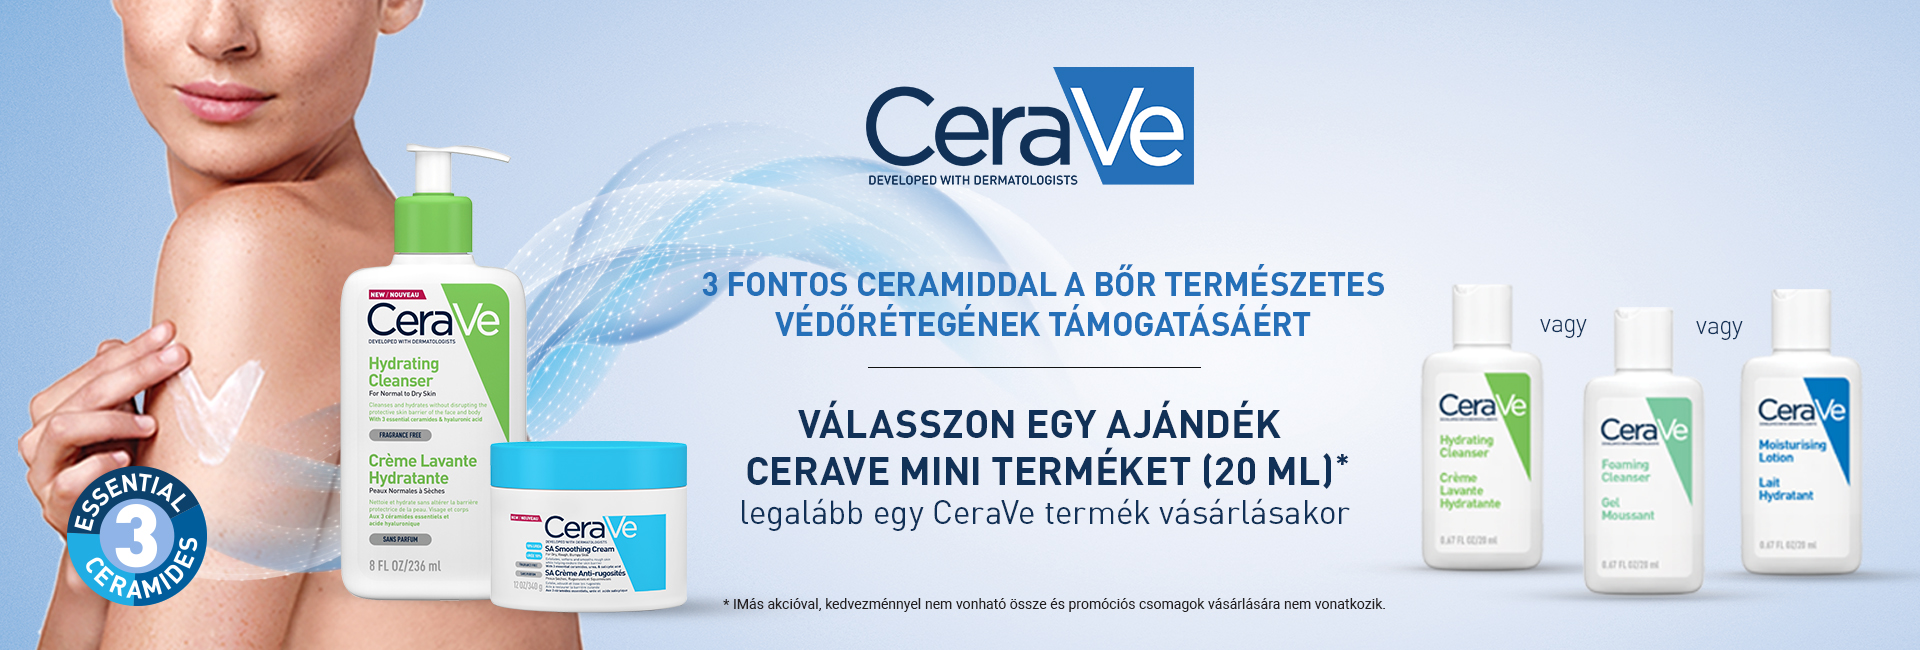 2020. július 22-31. között minden megrendelt CeraVe termék mellé 20ml-es CeraVe mini terméket adunk ajándékba 500 Ft értékben! 